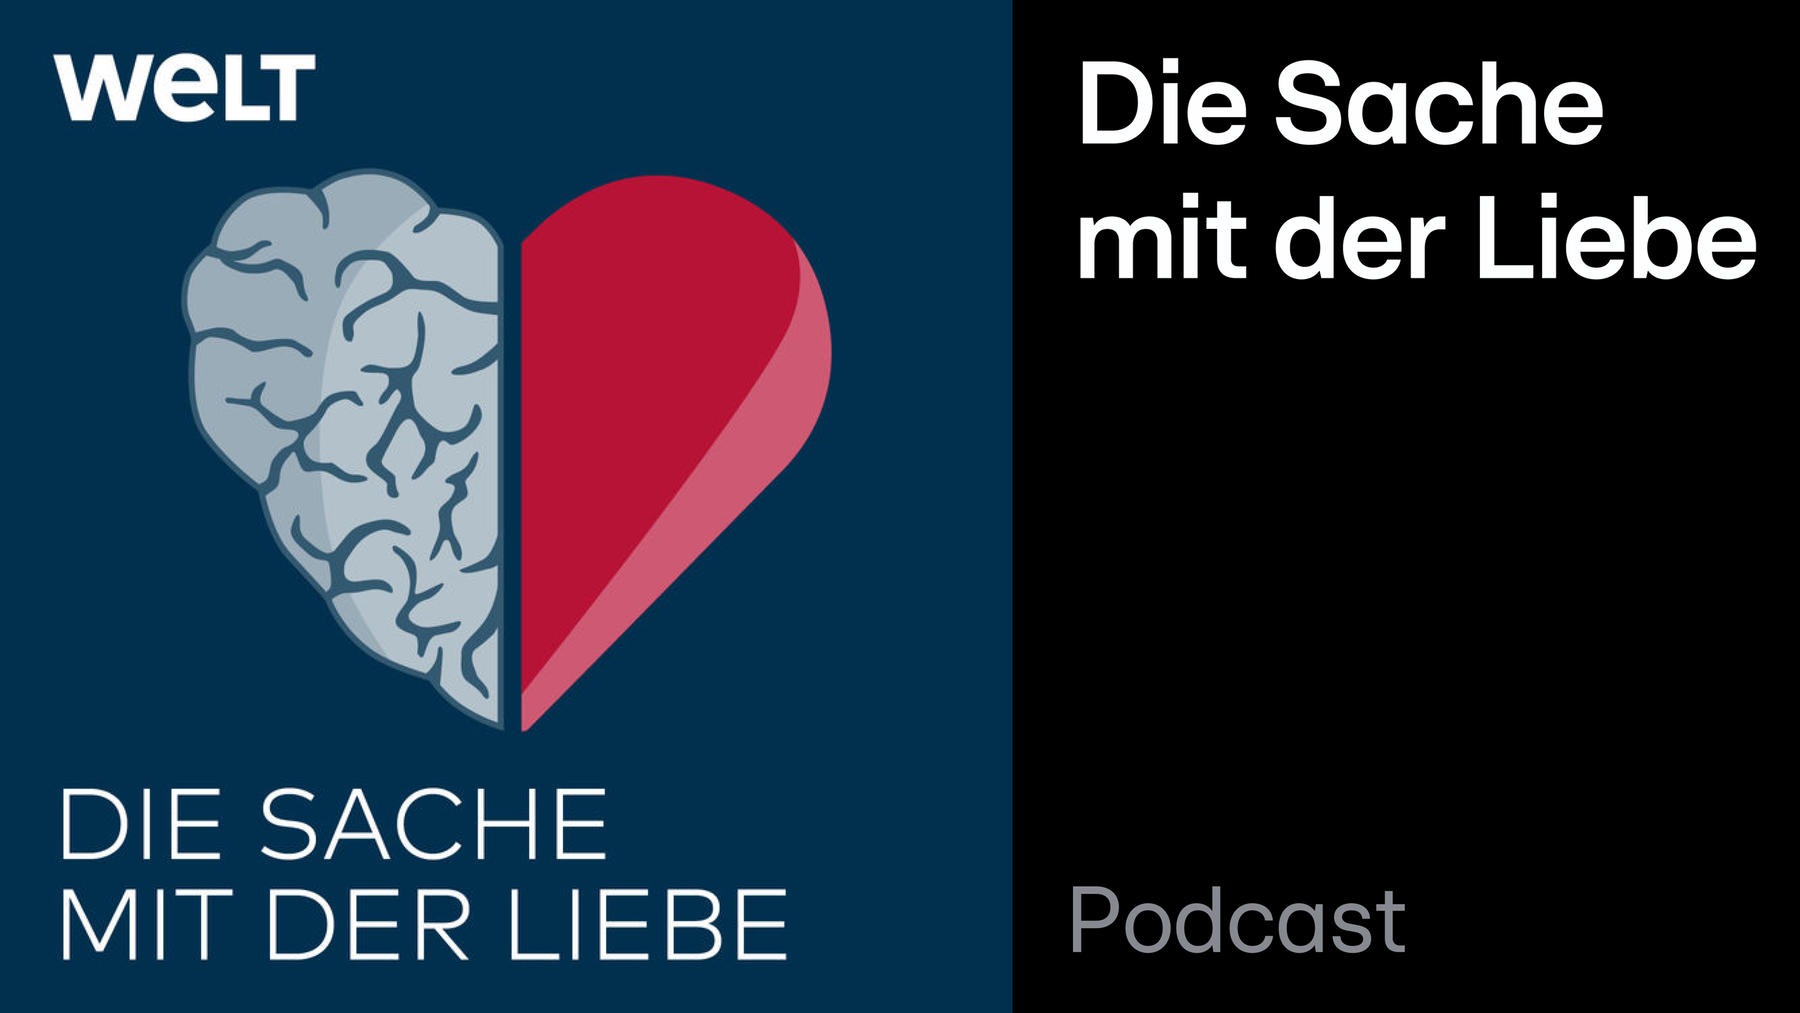 Podcast: Die Sache mit der Liebe